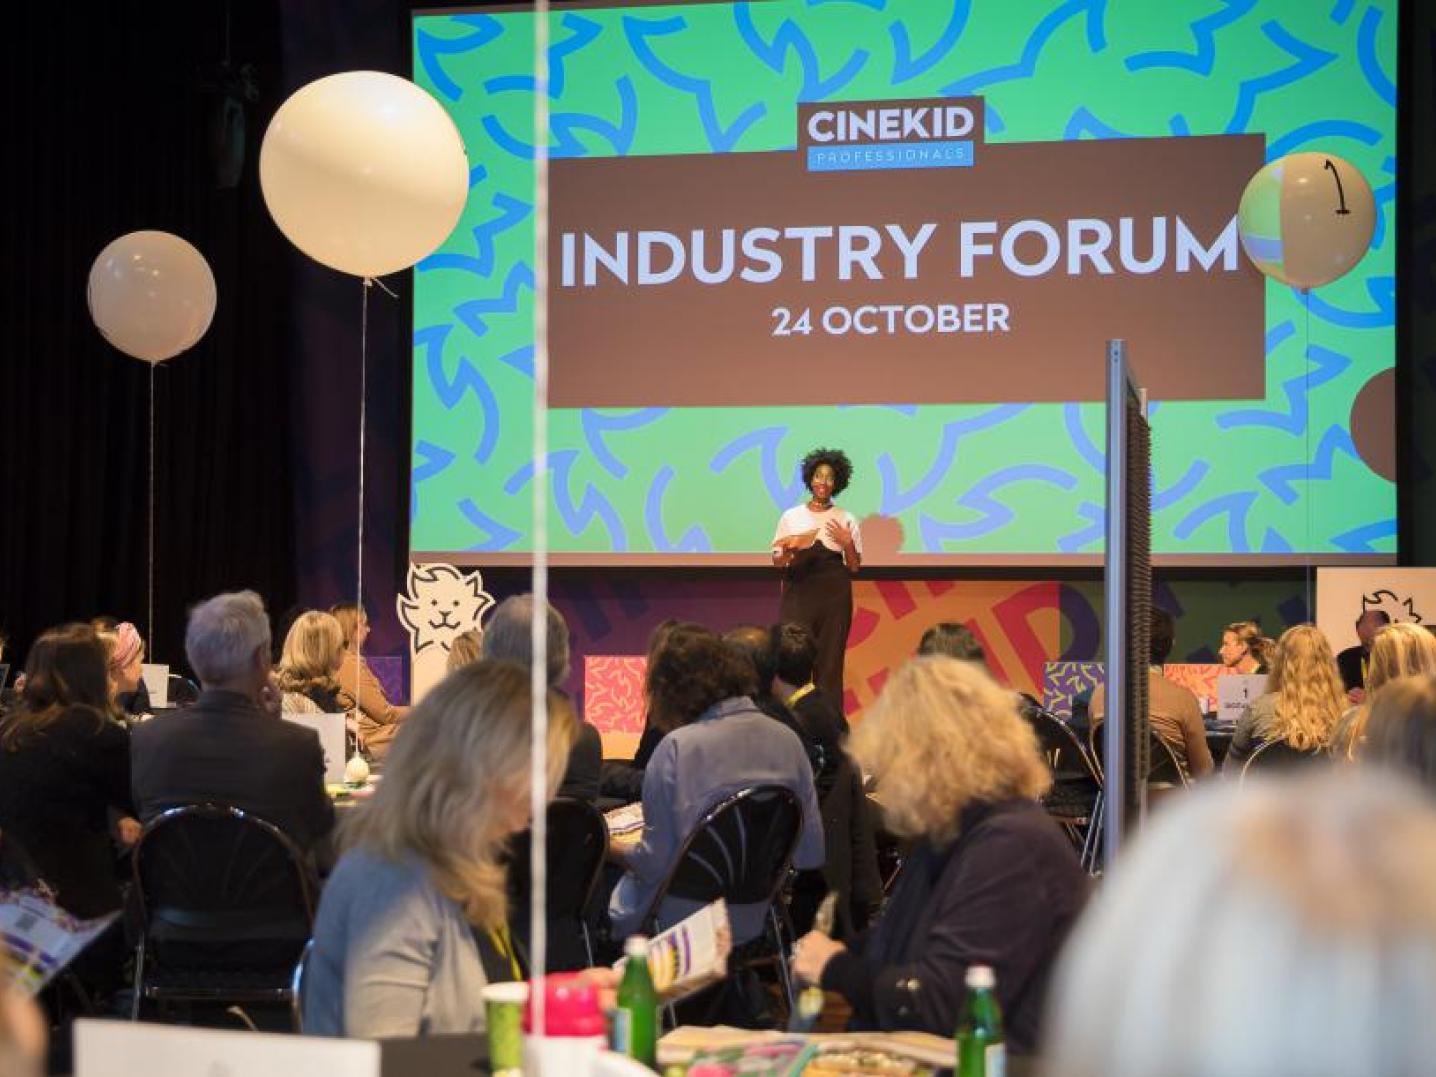 Industry Forum Cinekid